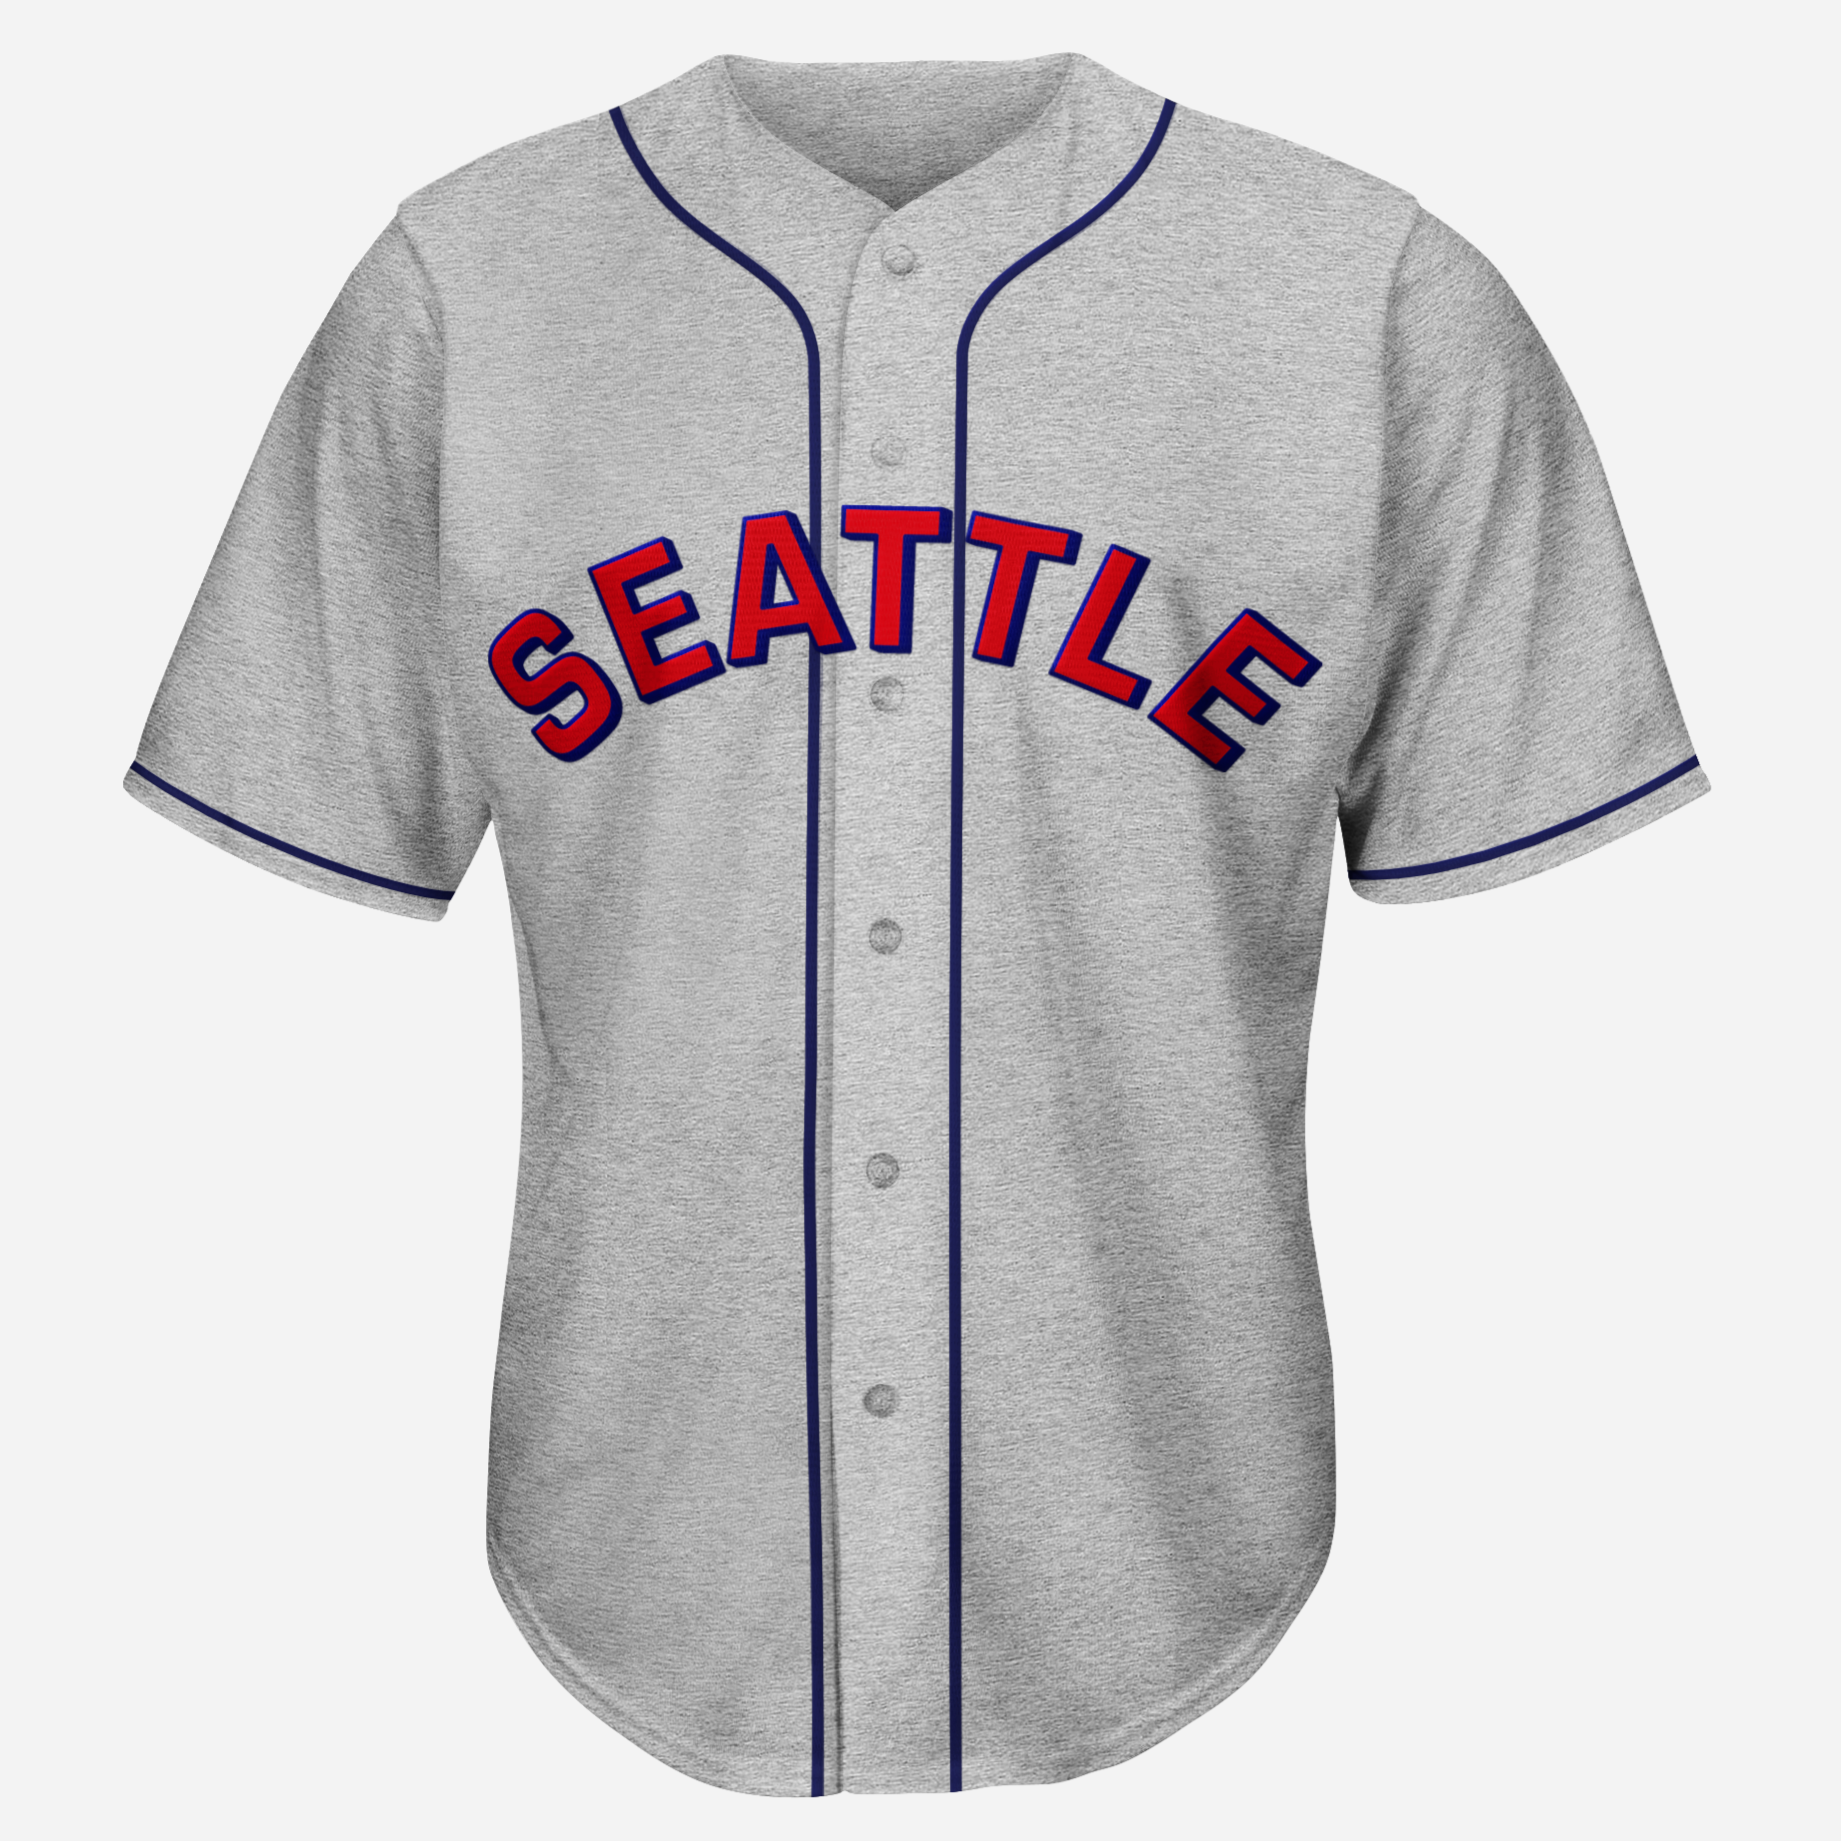 Seattle Mariners camisetas, Mariners camisetas, Seattle Mariners uniformes